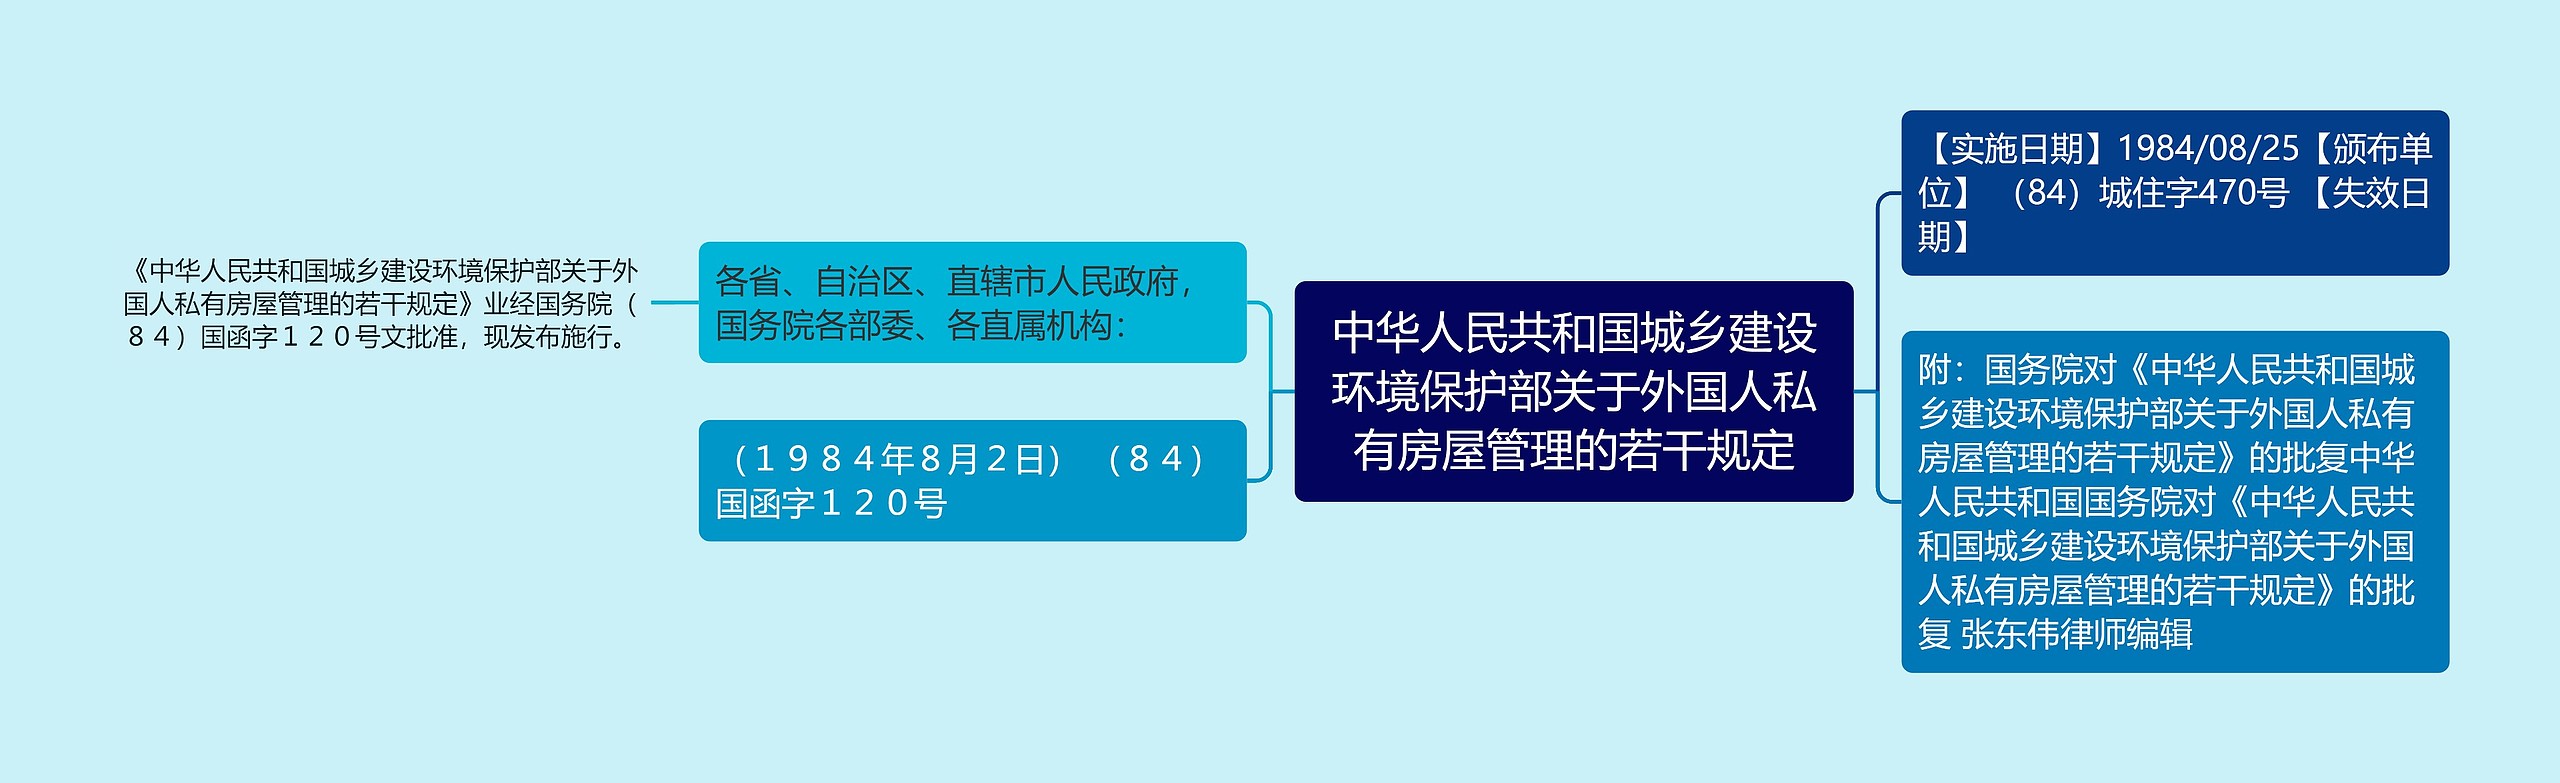 中华人民共和国城乡建设环境保护部关于外国人私有房屋管理的若干规定